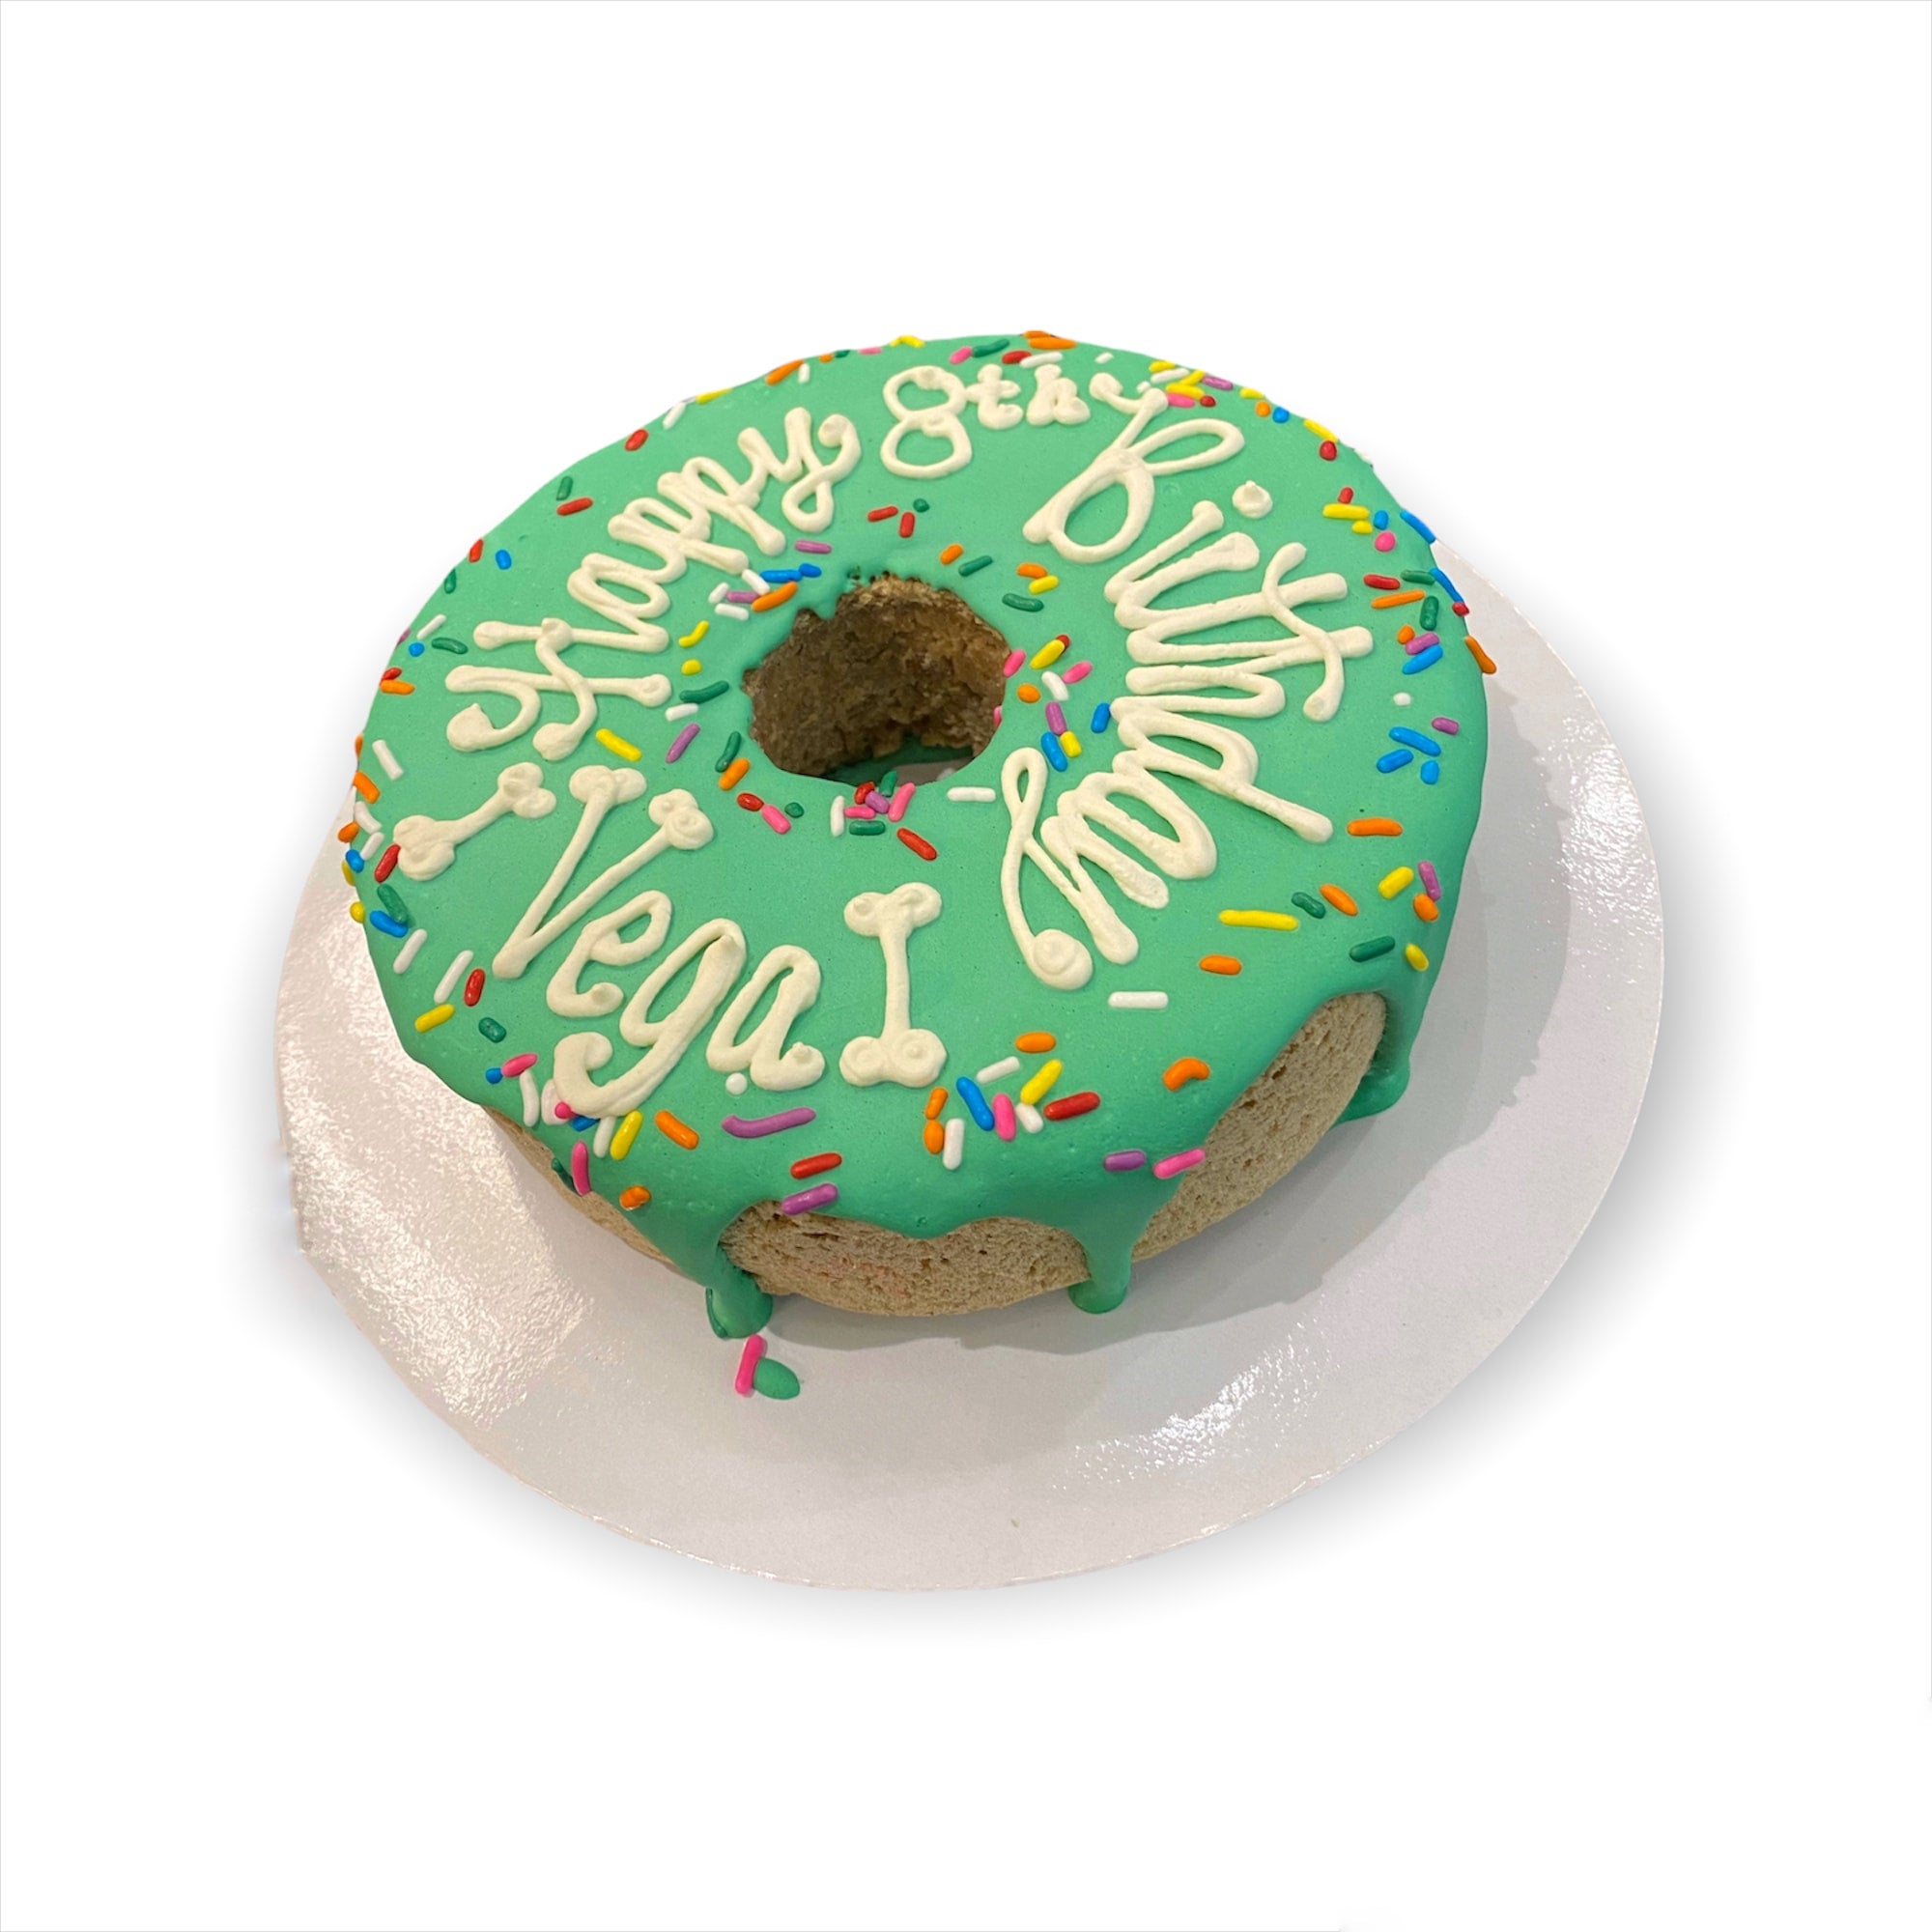 Personalized Donut-Shaped Dog Cake